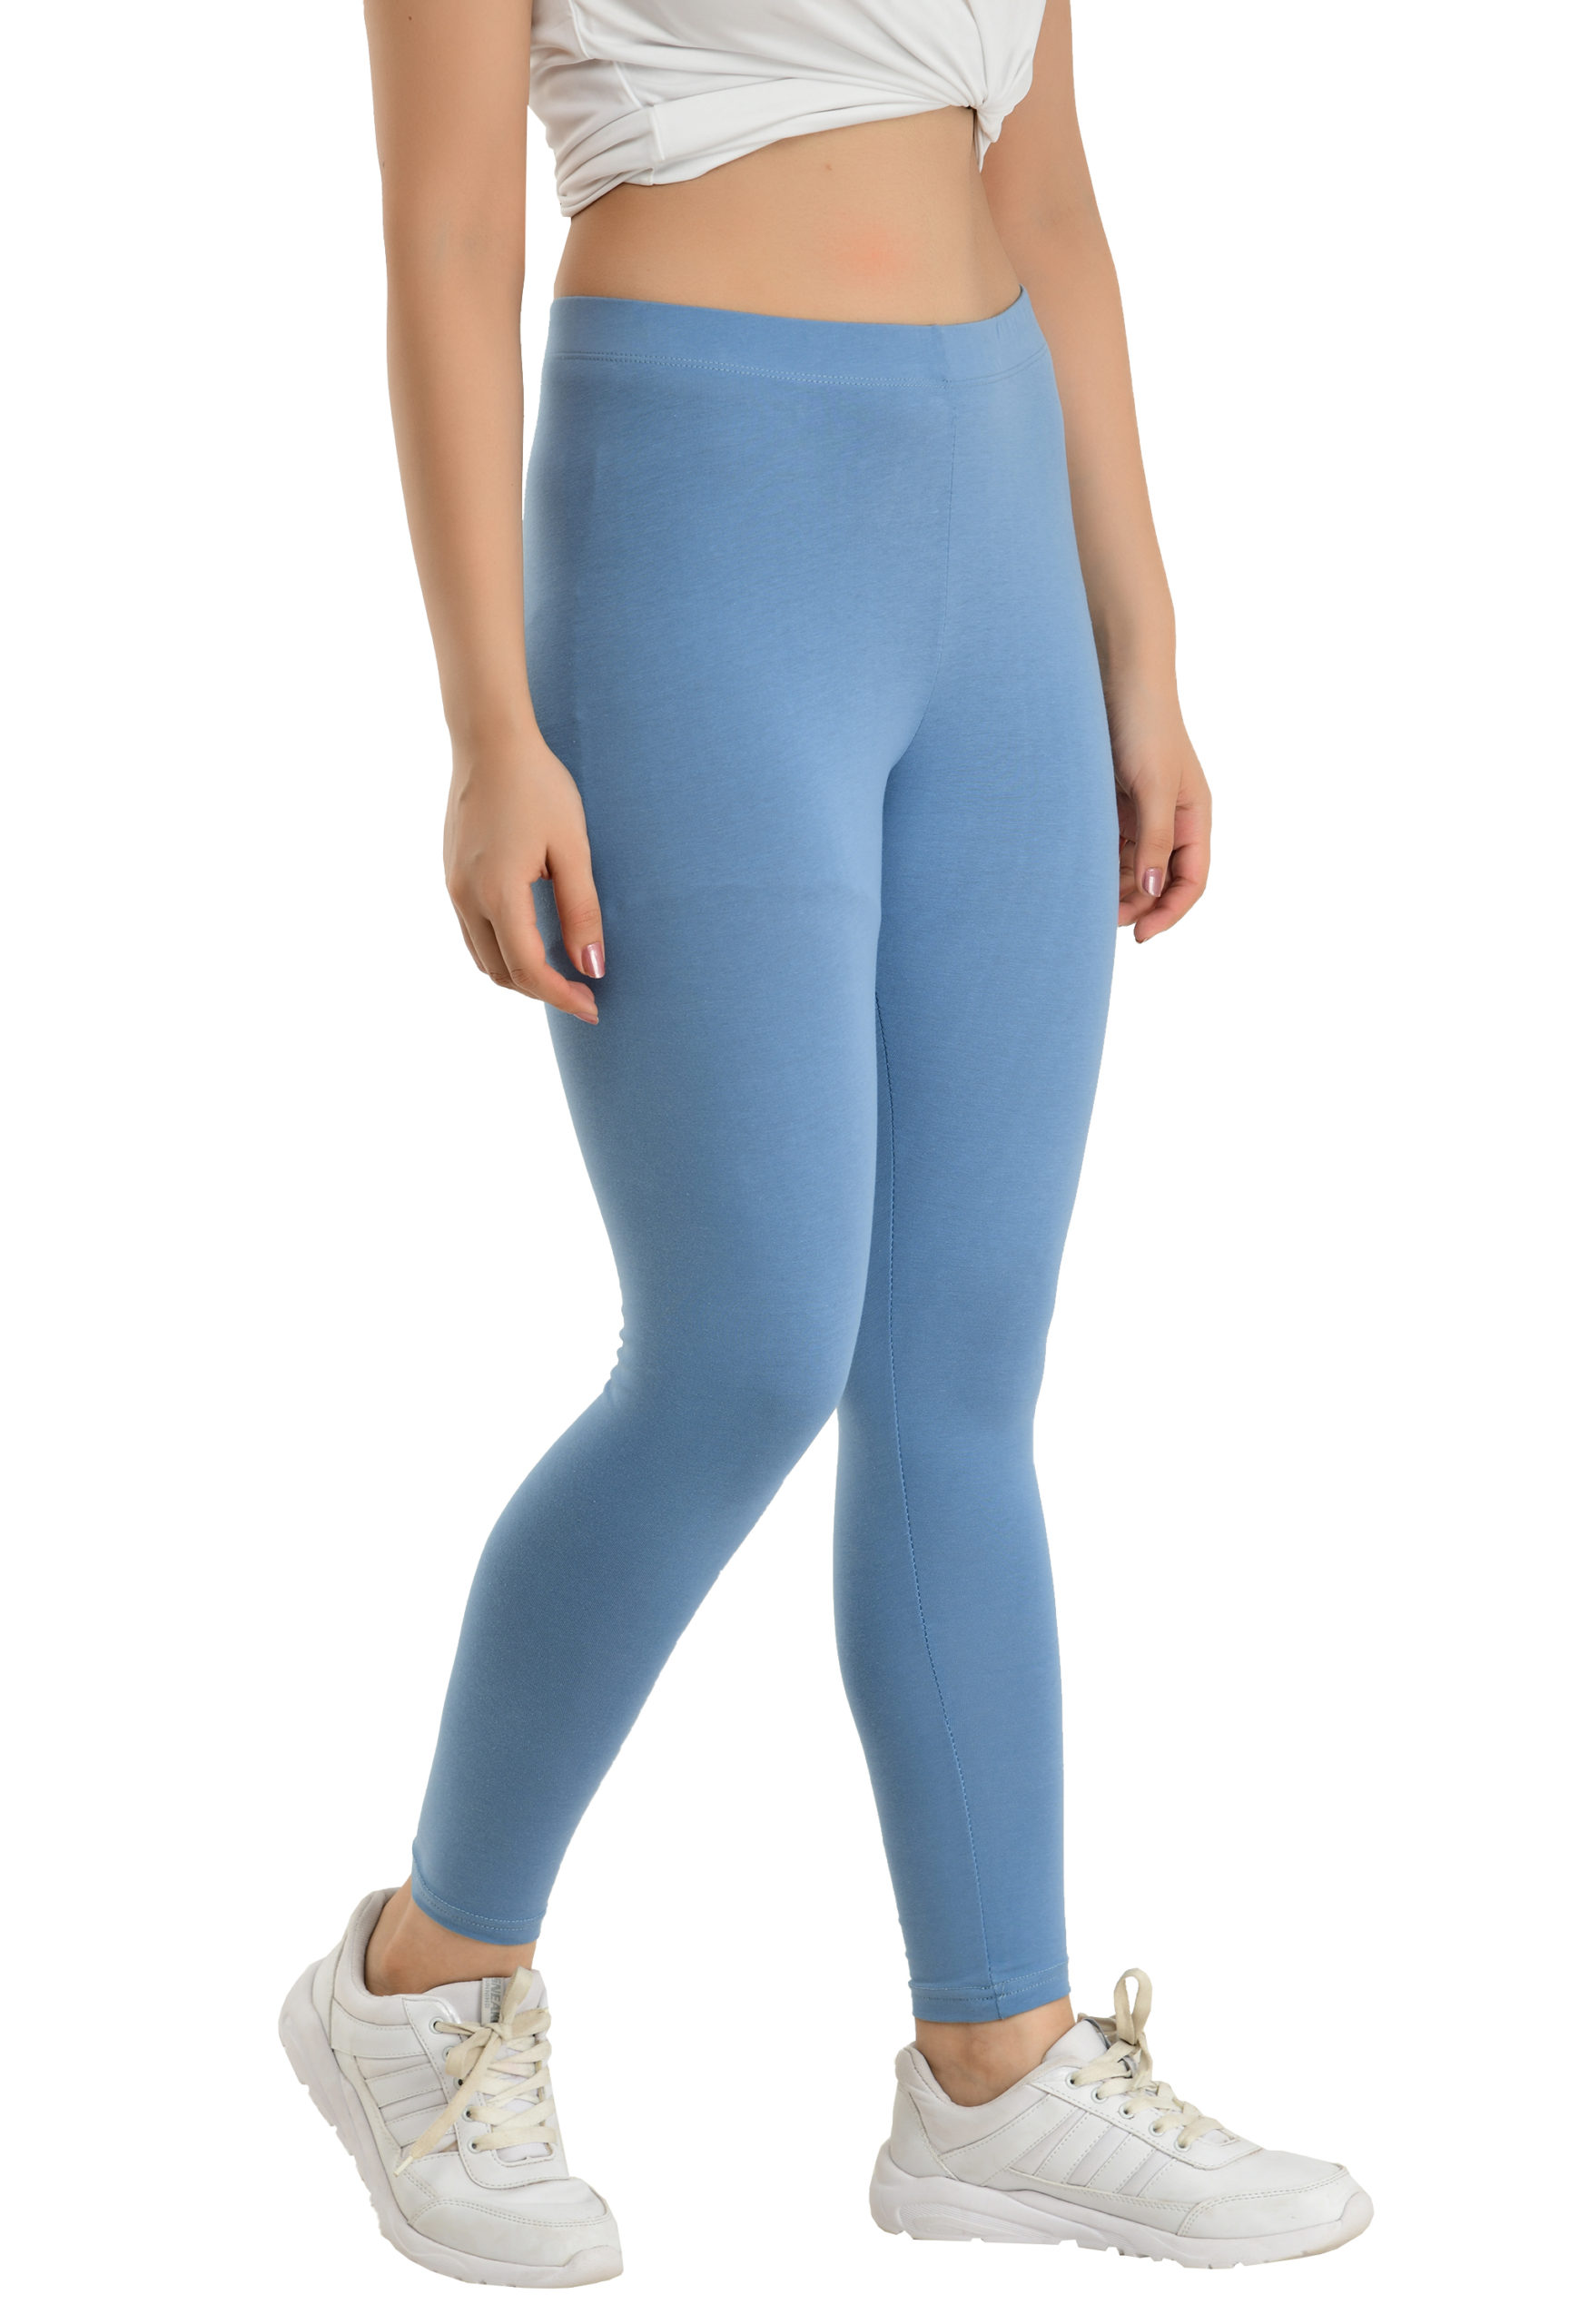 Buy LA12ST Women's Blue Side Zipper Jean Look Jeggings Tights Spandex Leggings  Denim Pants at Amazon.in